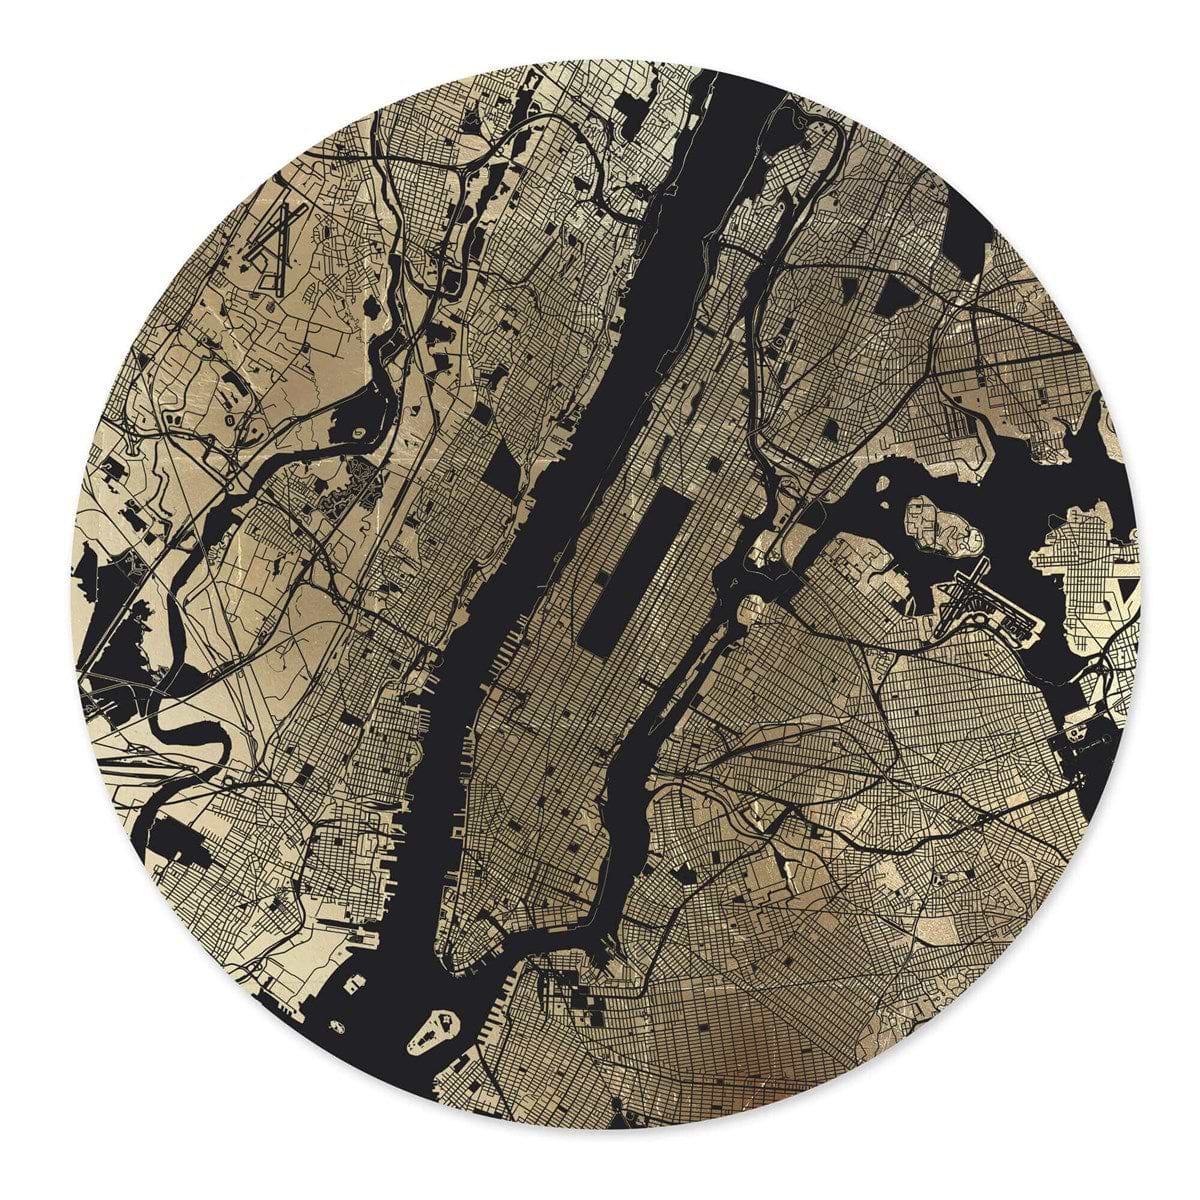 Mappa Mundi New York (Black On Gold)